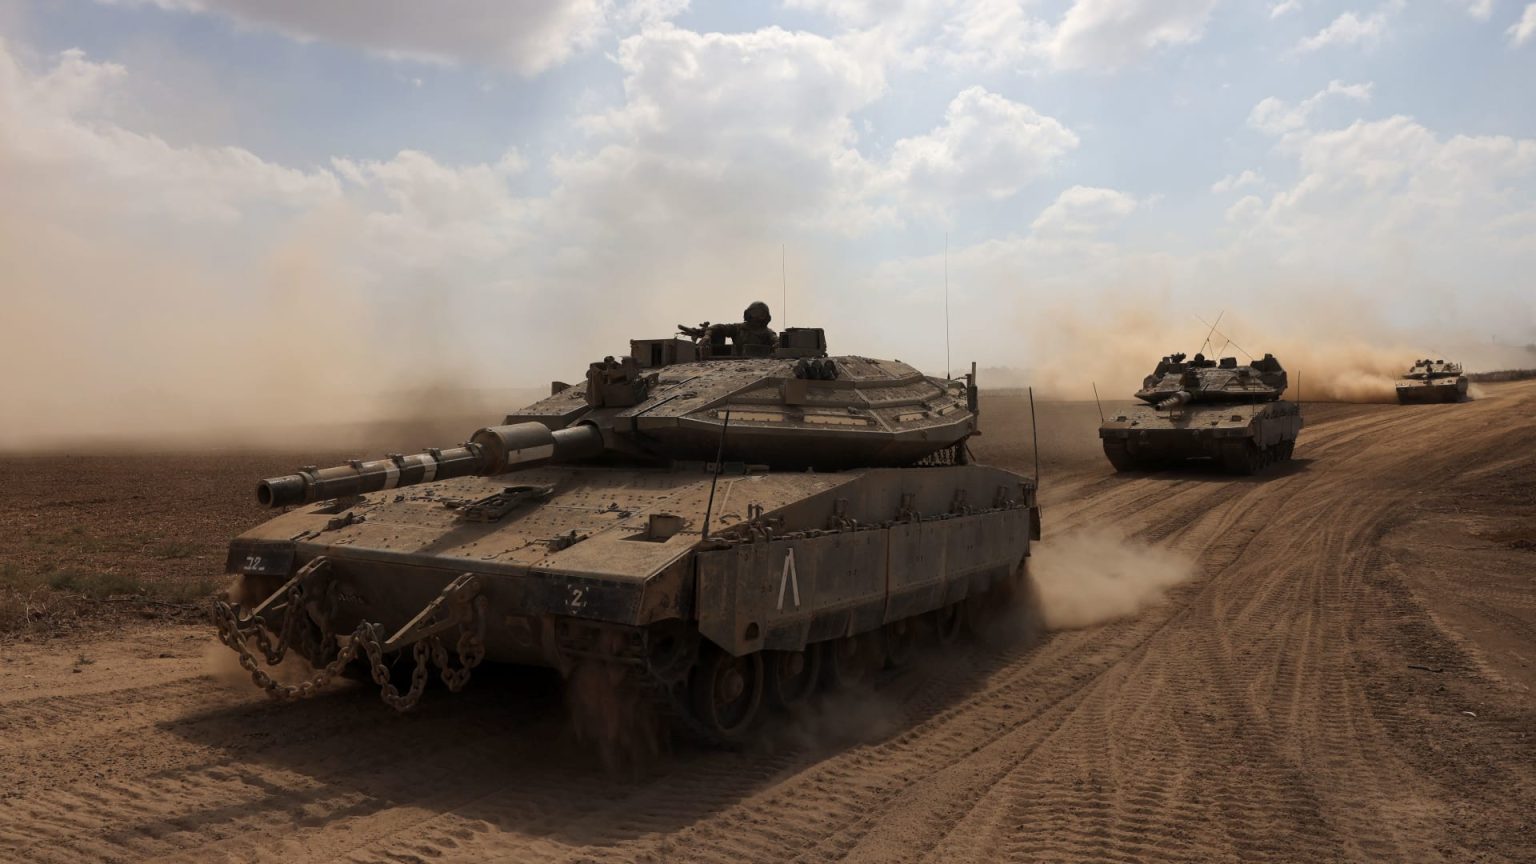 مجلس الحرب الإسرائيلي يجتمع وتوقعات بأن يعطي الأمر بالهجوم البري الليلة